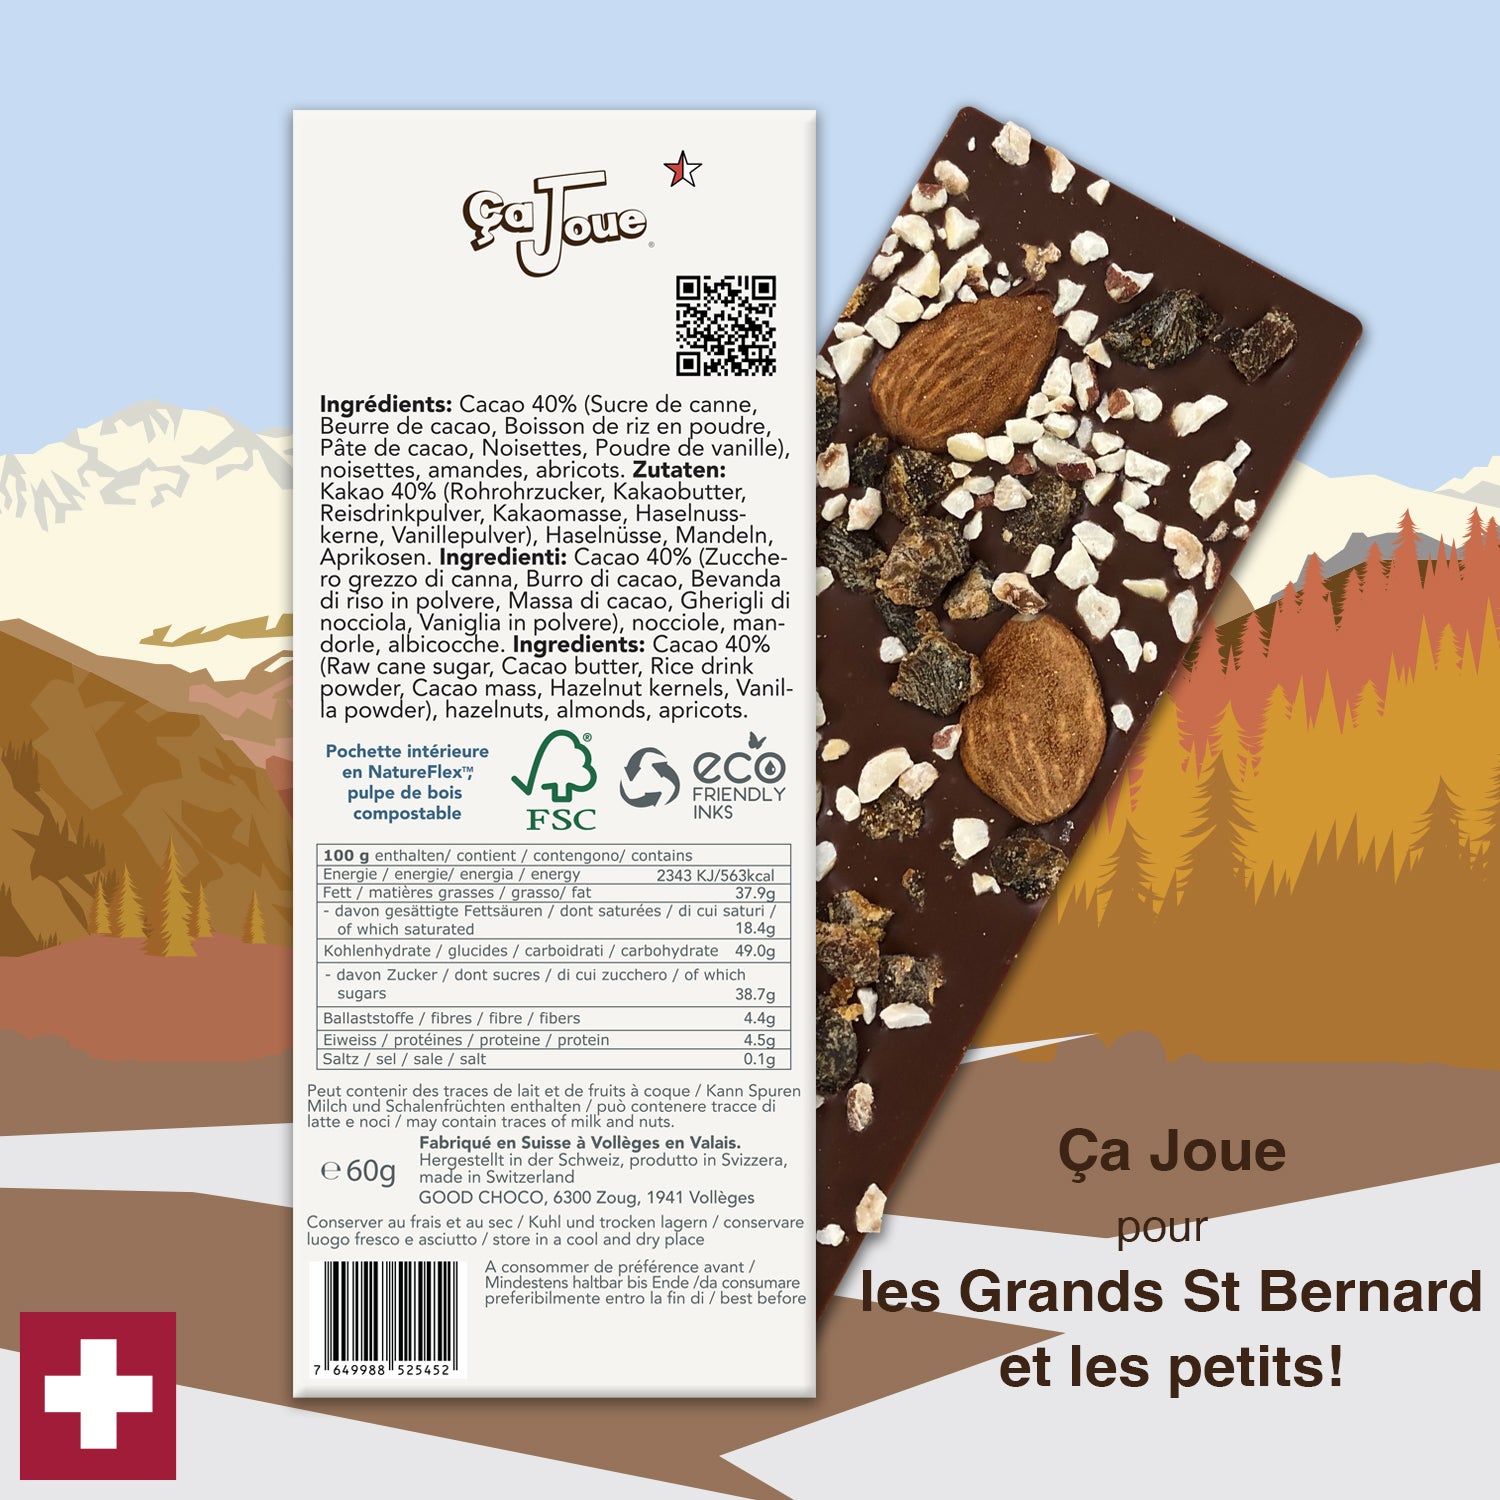 Ça Joue pour les petits St Bernard (Ref-N16) Chocolat du Val de Bagnes